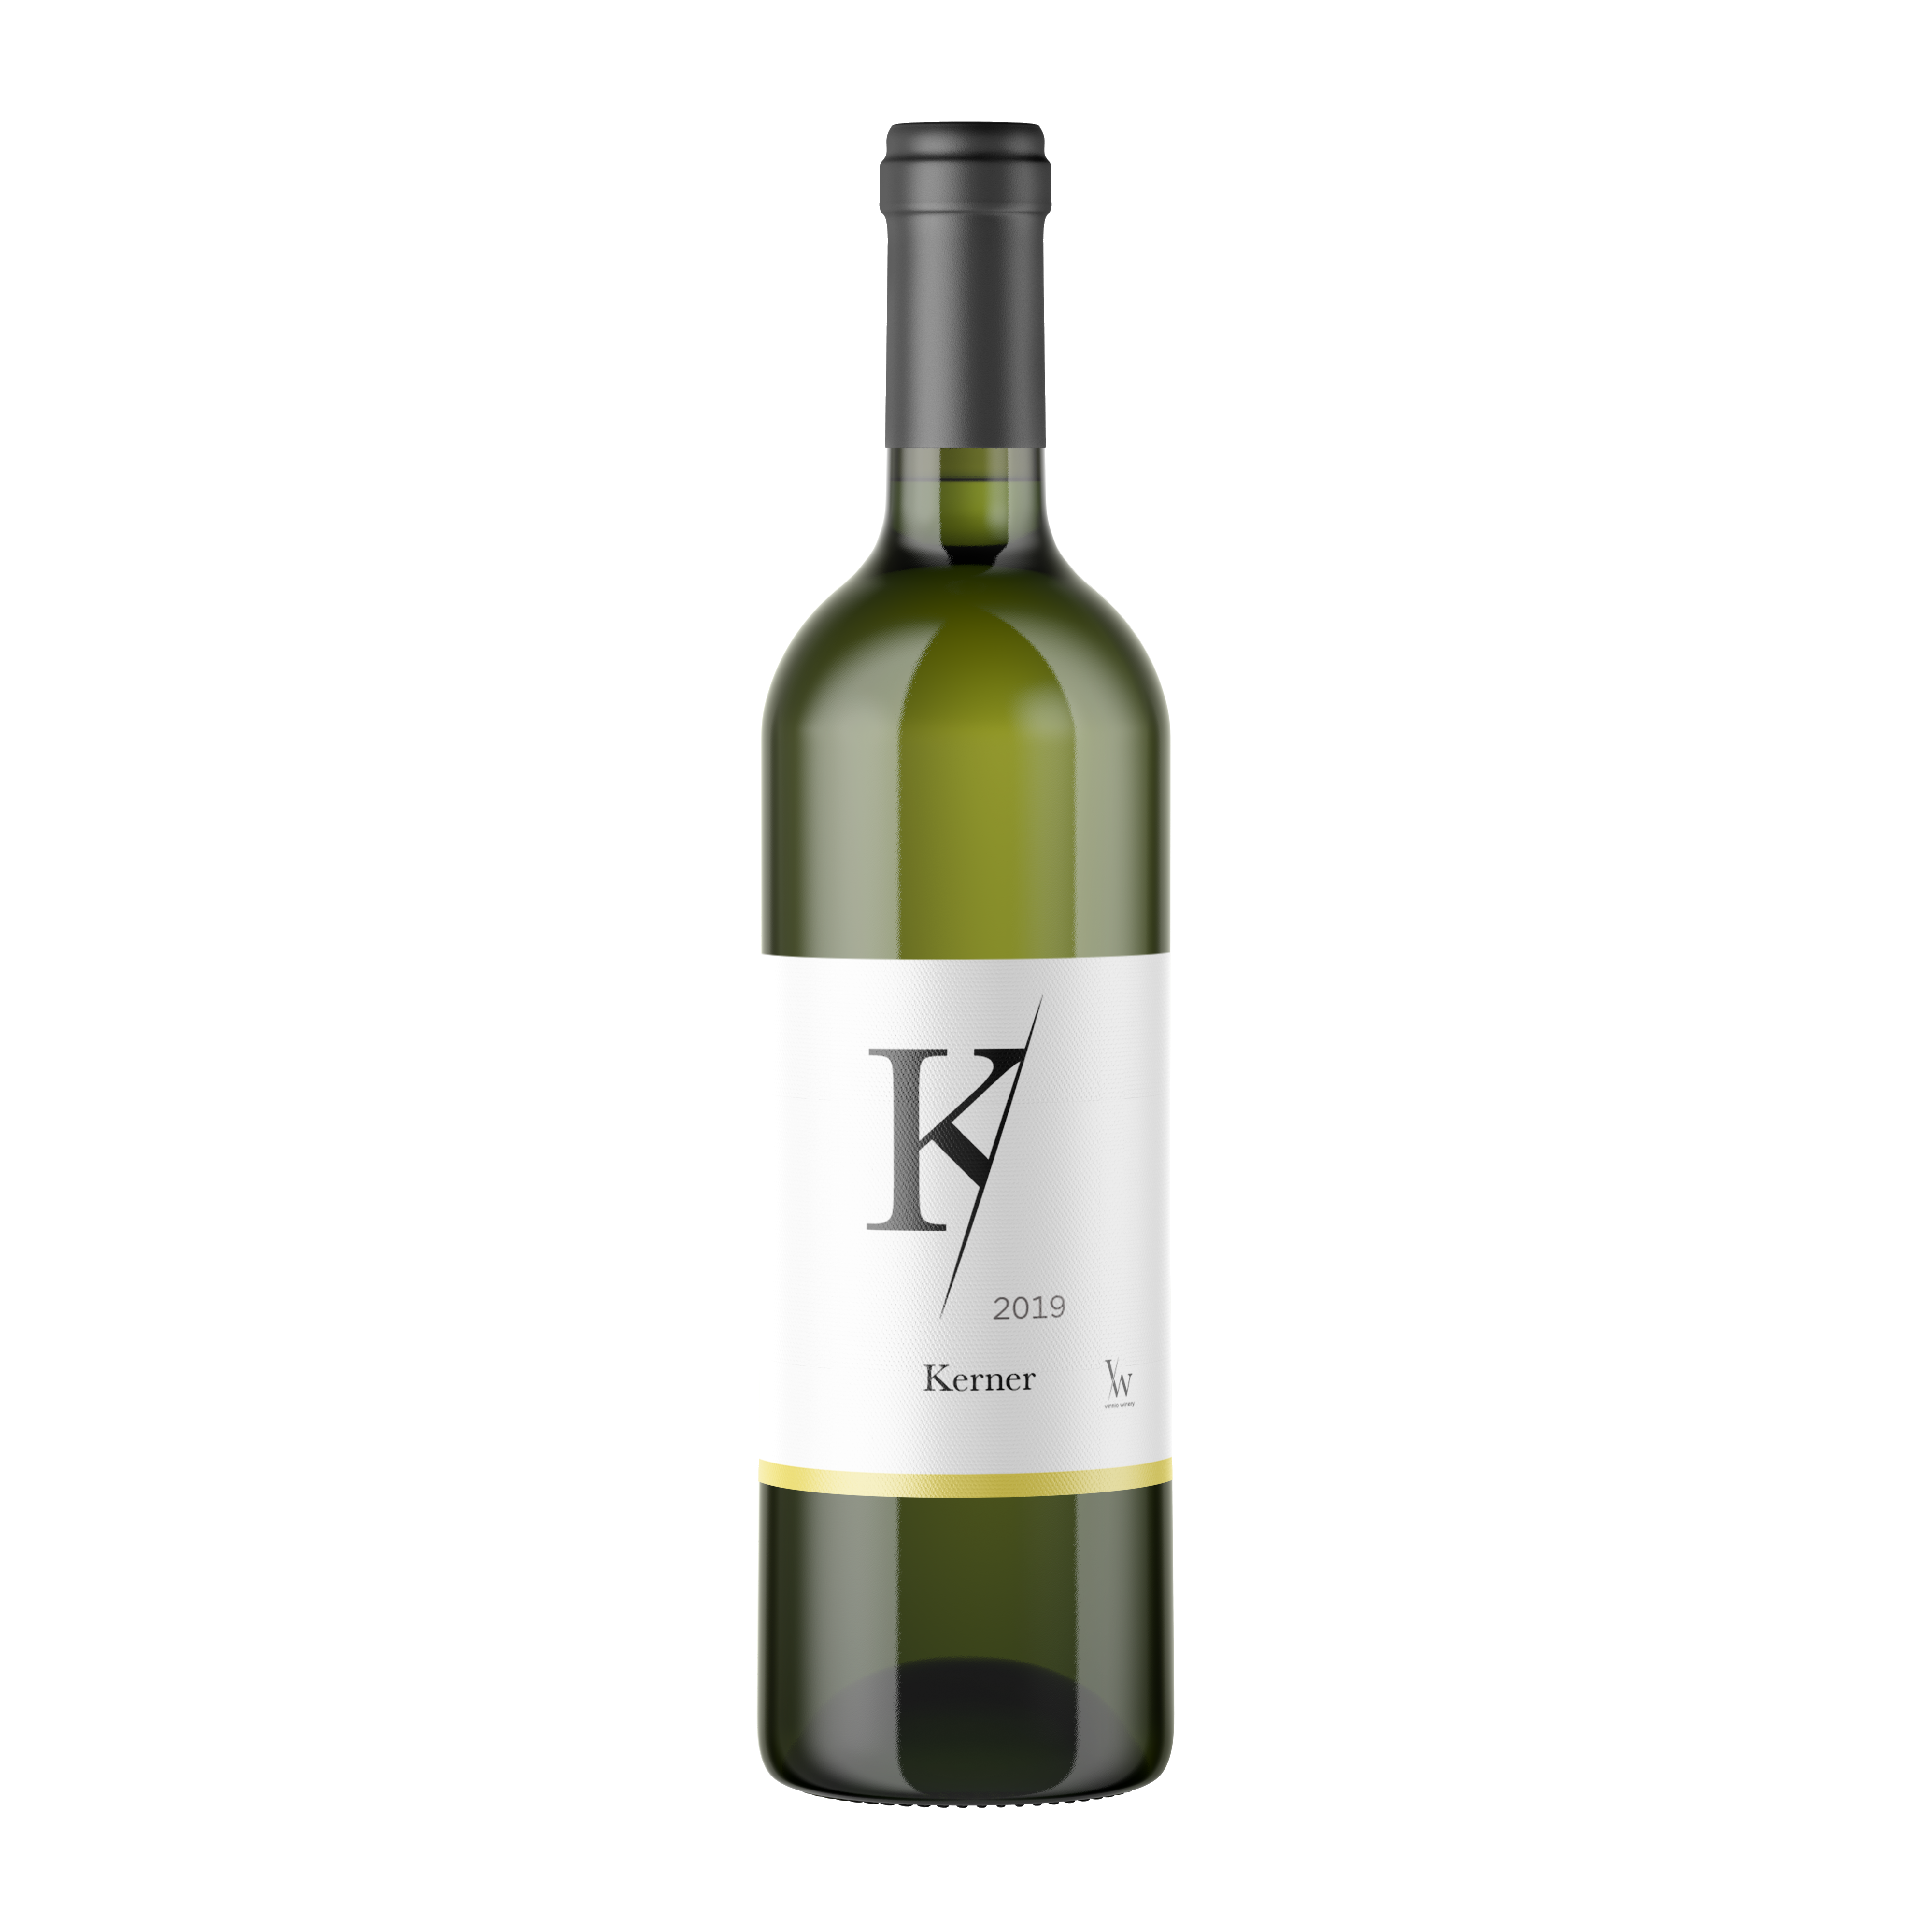 Vinnio Winery - Kerner 2019